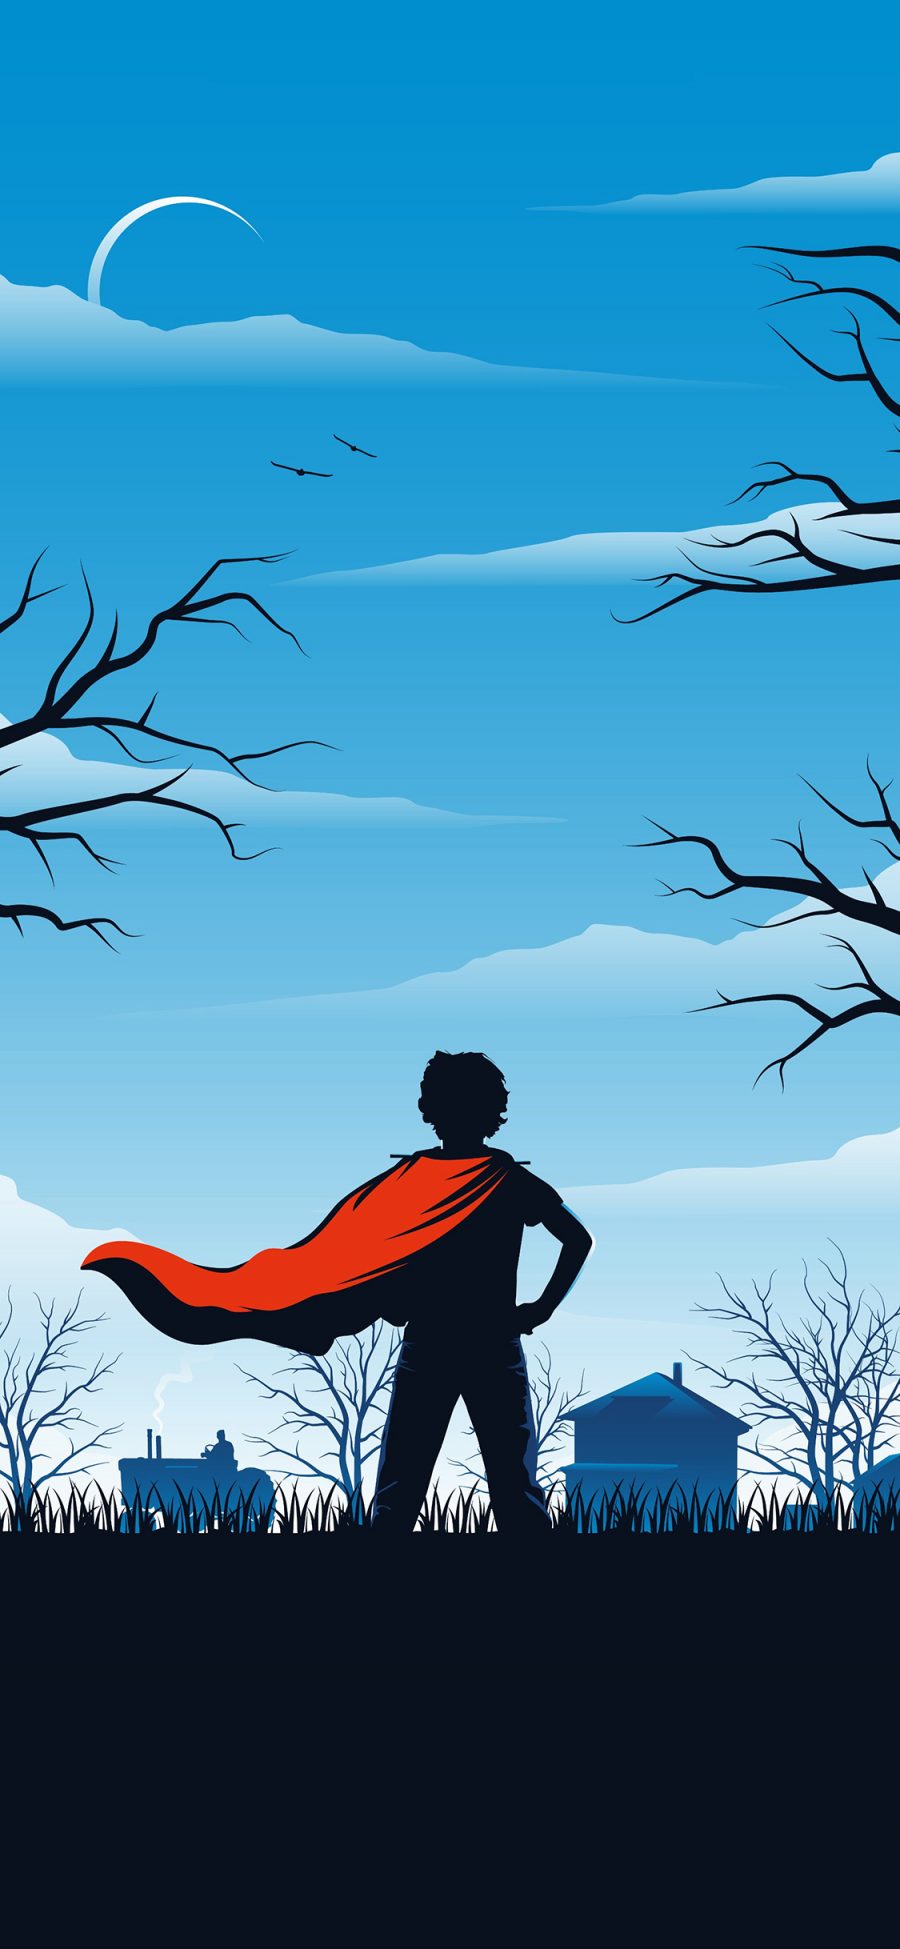 [2436×1125]超人 钢铁之躯 漫威 背影 超级英雄 欧美 苹果手机动漫壁纸图片